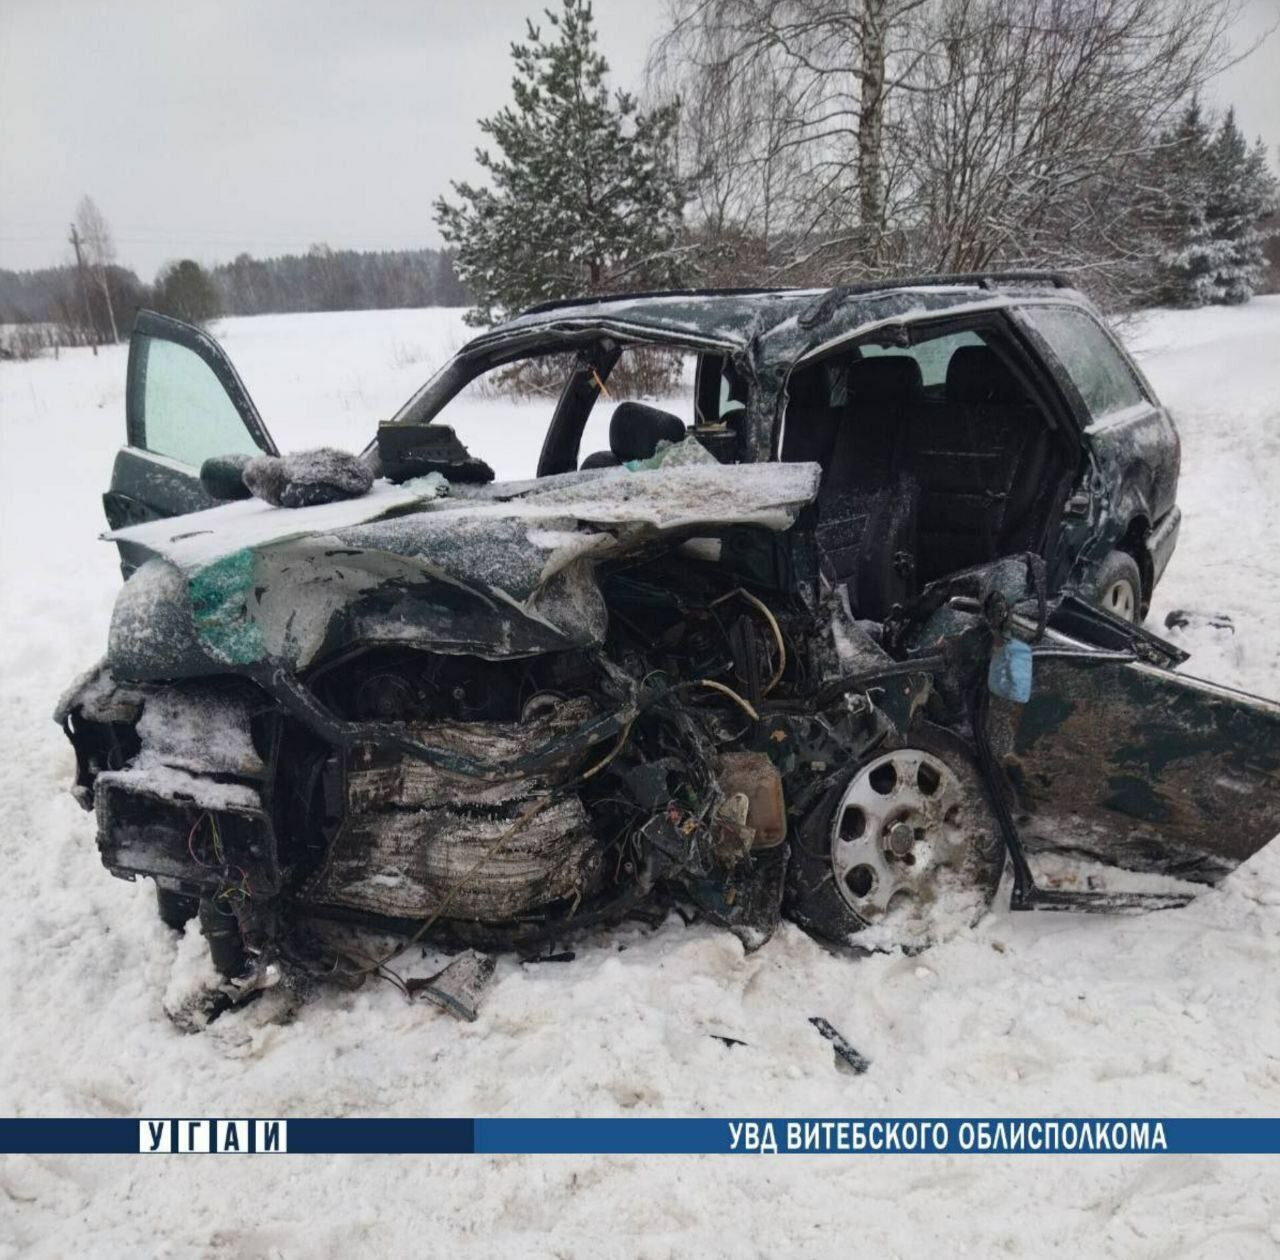 Под Полоцком в столкновении Audi и Skania погиб пассажир. Водитель фуры скрылся с места ДТП